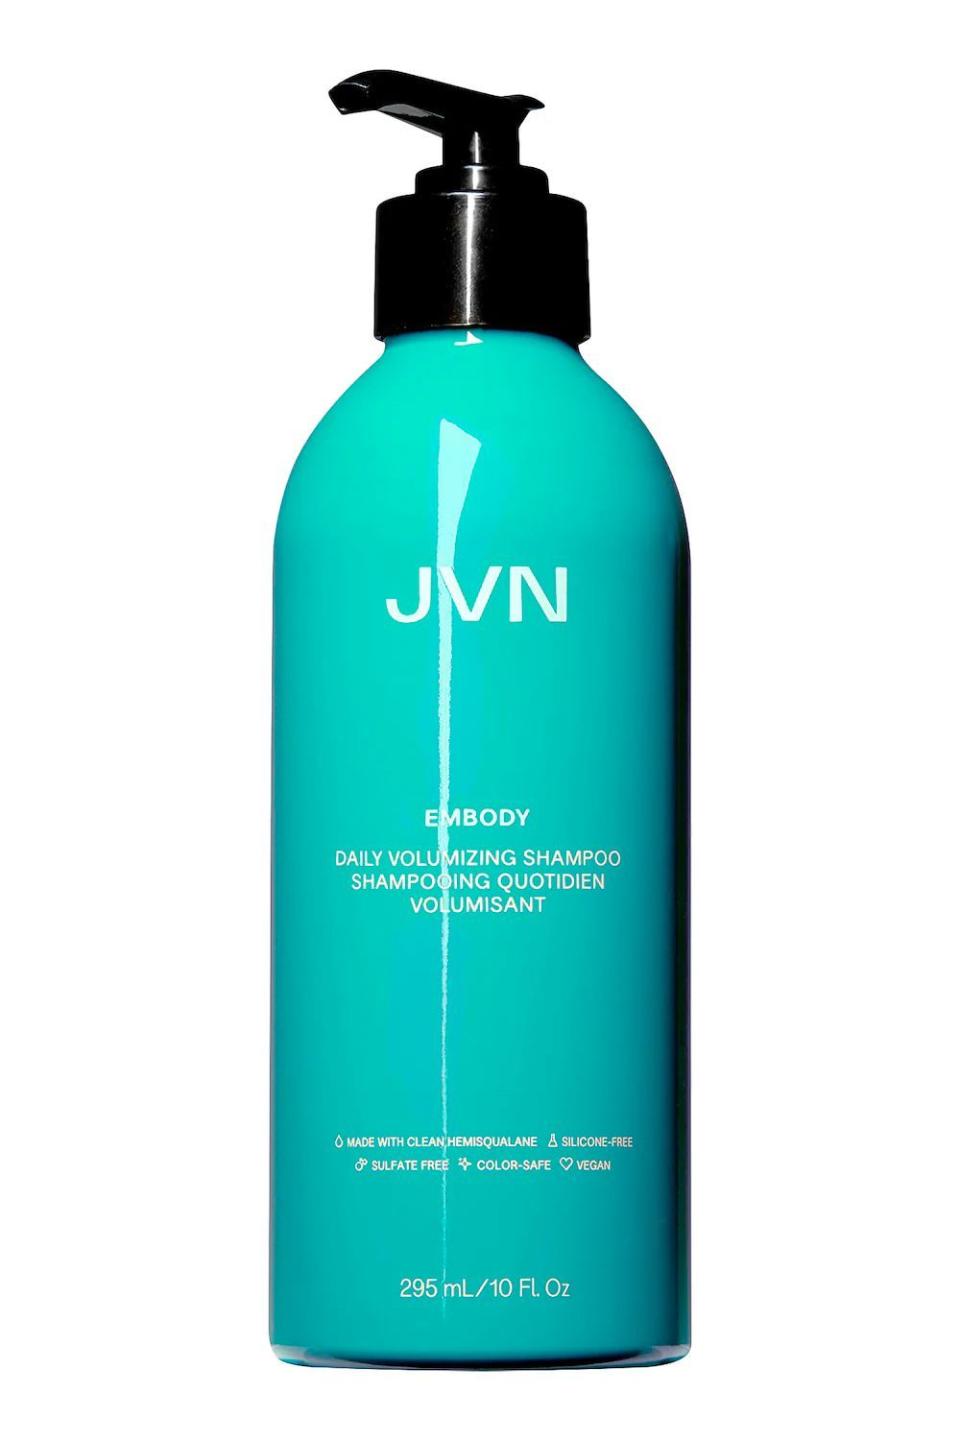 8) JVN Embody Daily Volumizing Shampoo